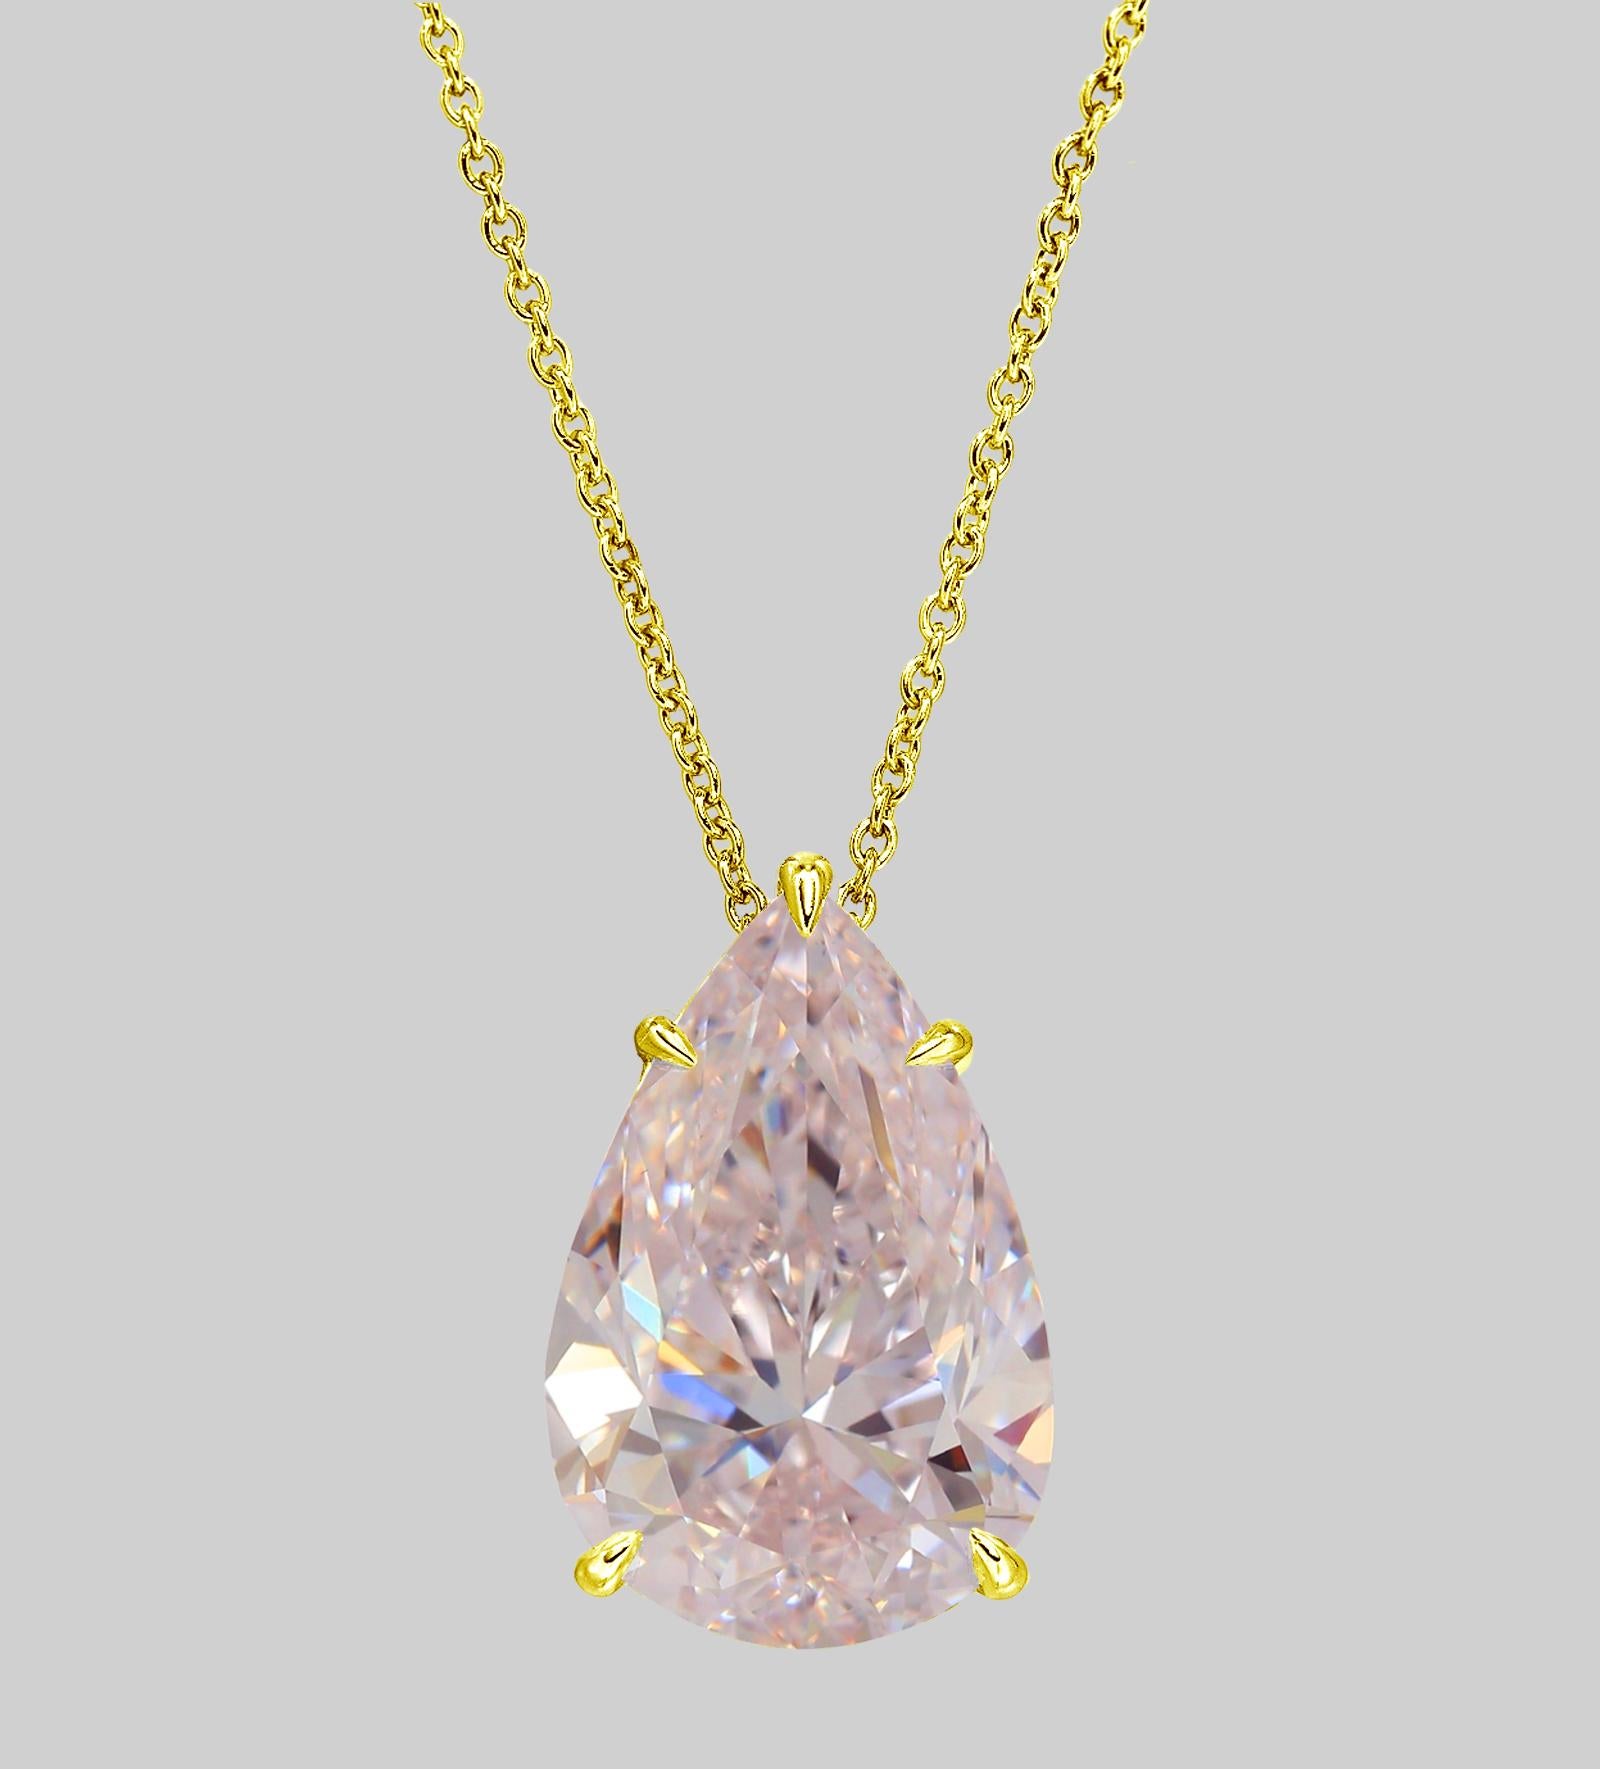 Modern GIA Certified 10 Carat Flawless Pear Cut Fancy Intense Pink Diamond Pendant